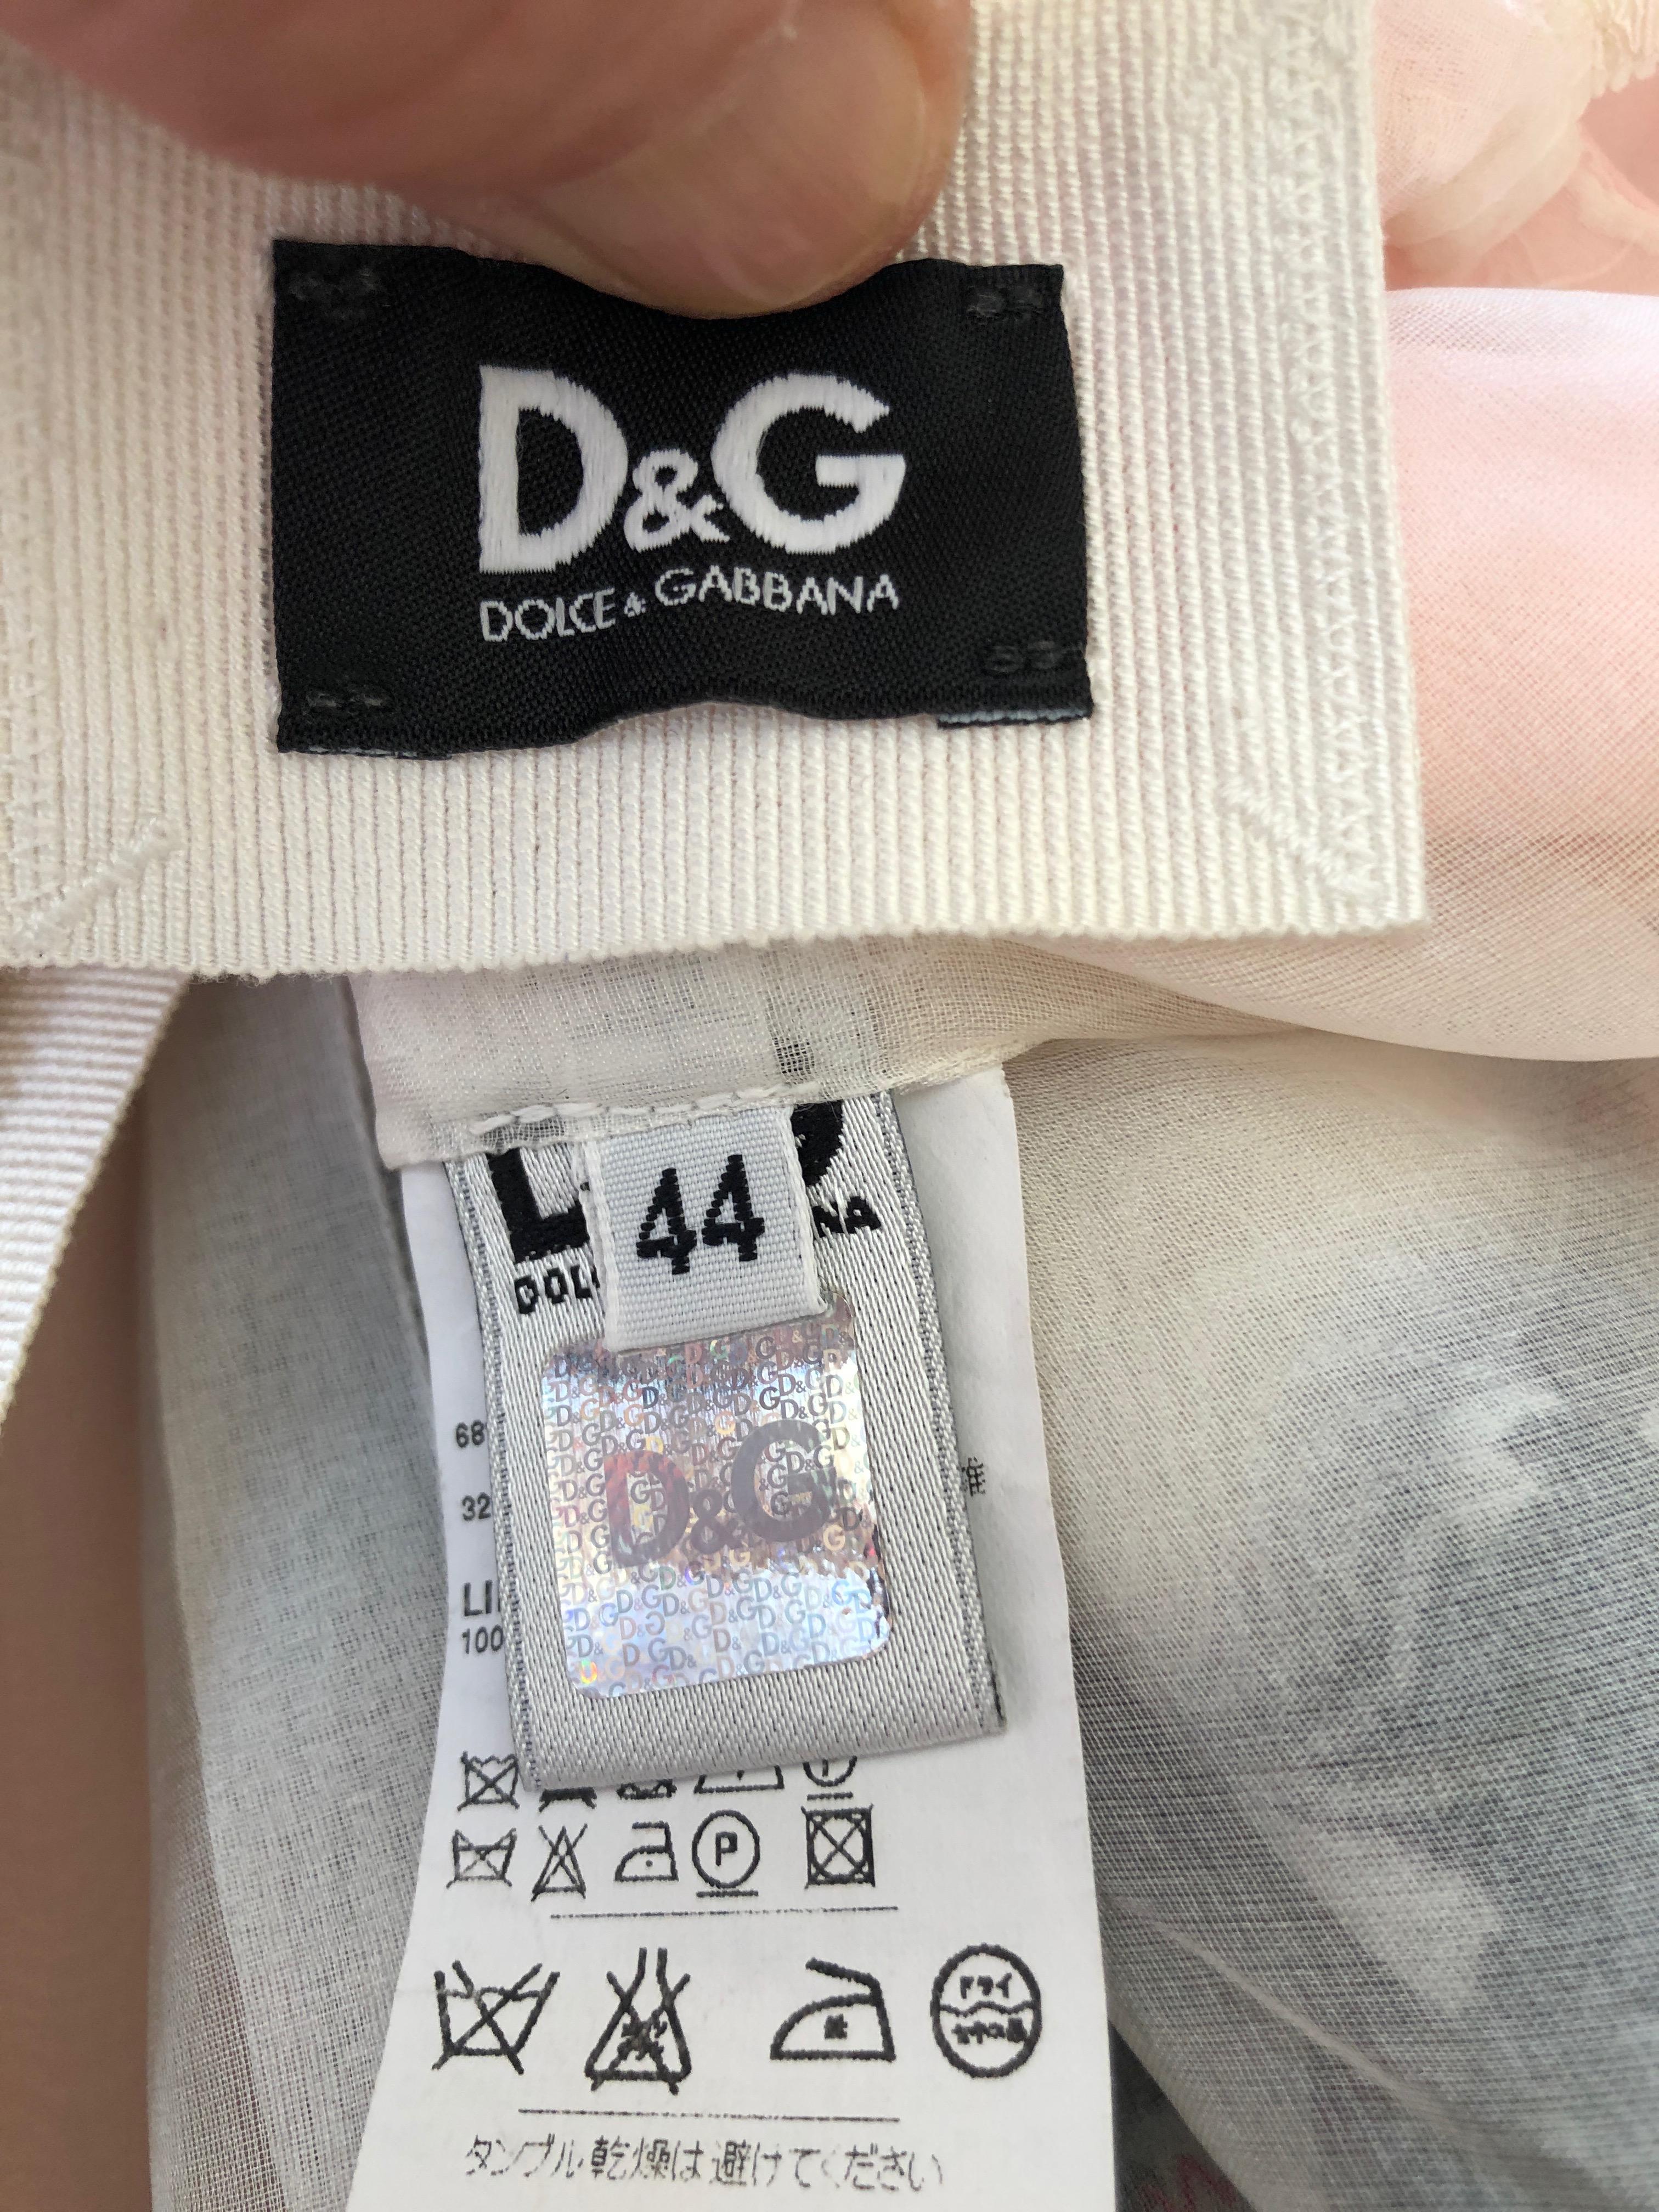 D&G Dolce & Gabbana Romantic Floral Dress For Sale 1